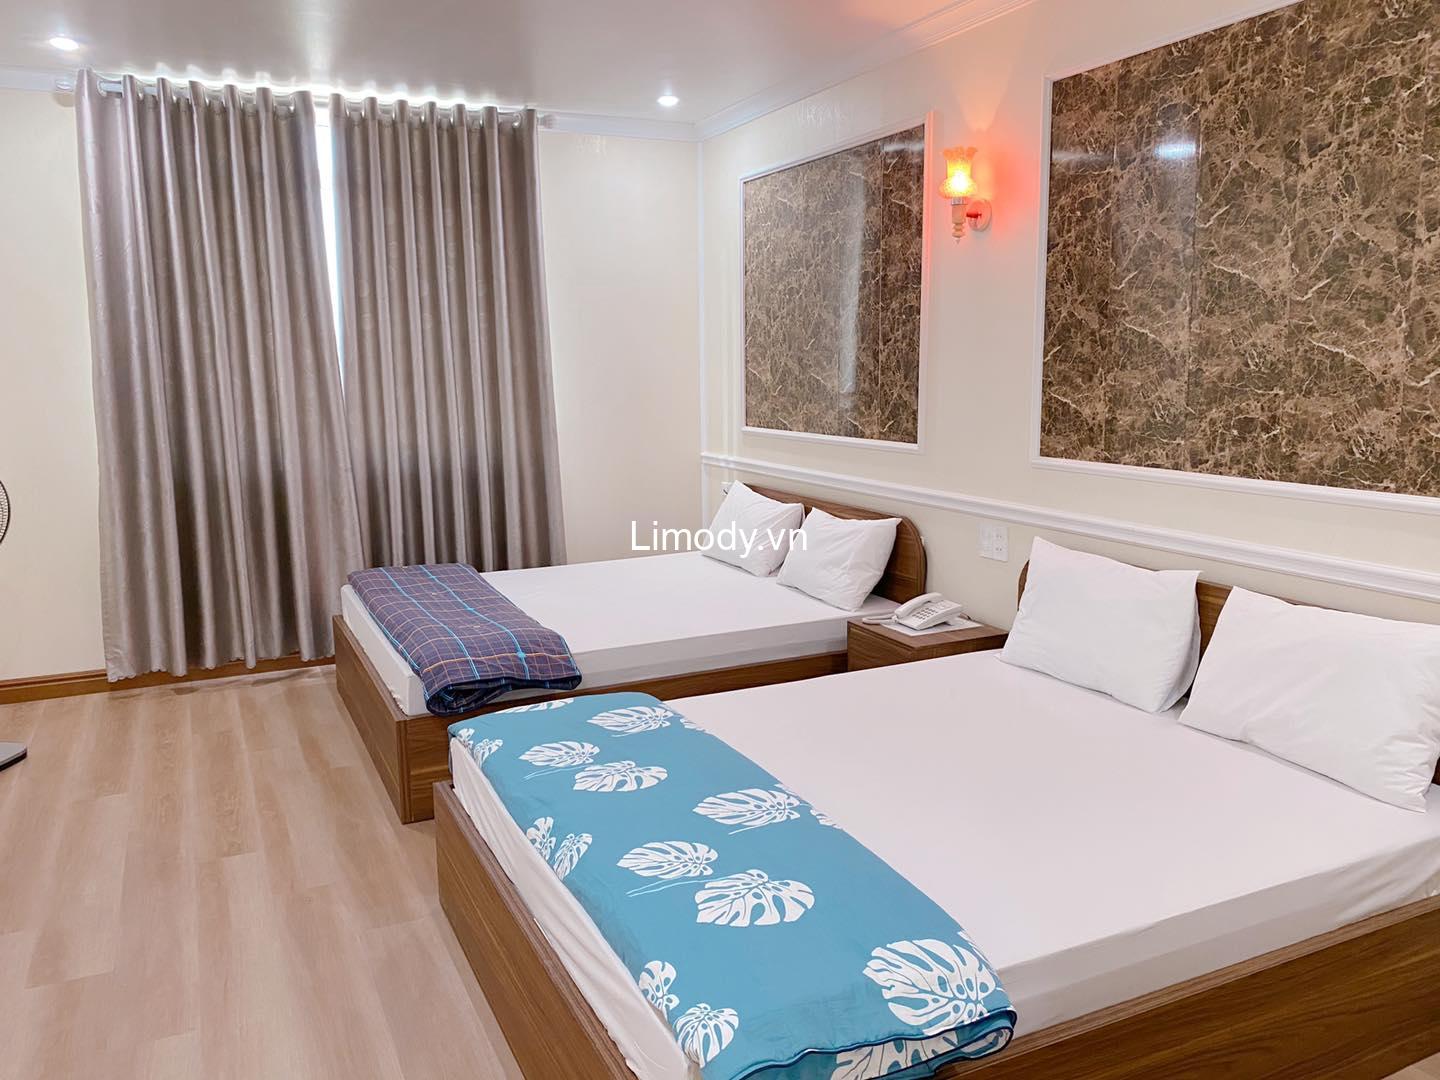 Top 10 Hostel guesthouse nhà nghỉ Hải Phòng giá rẻ view đẹp ở trung tâm